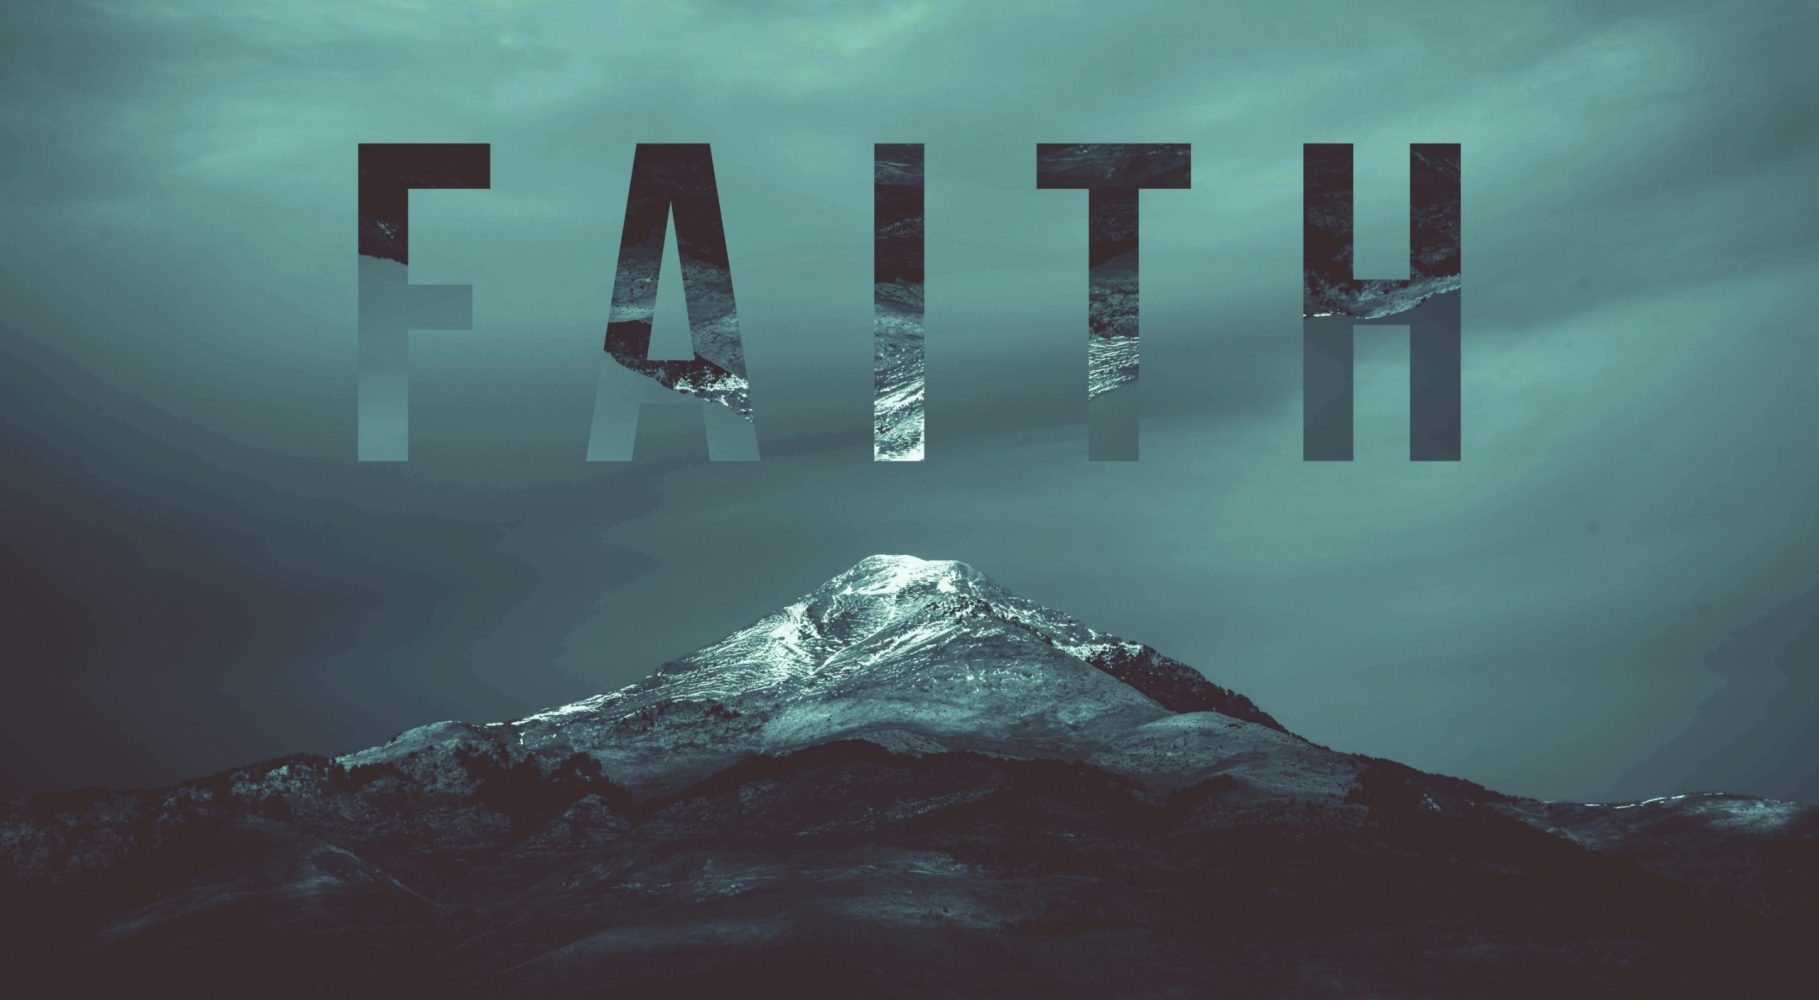 دور التقوى في حفظ الإيمان